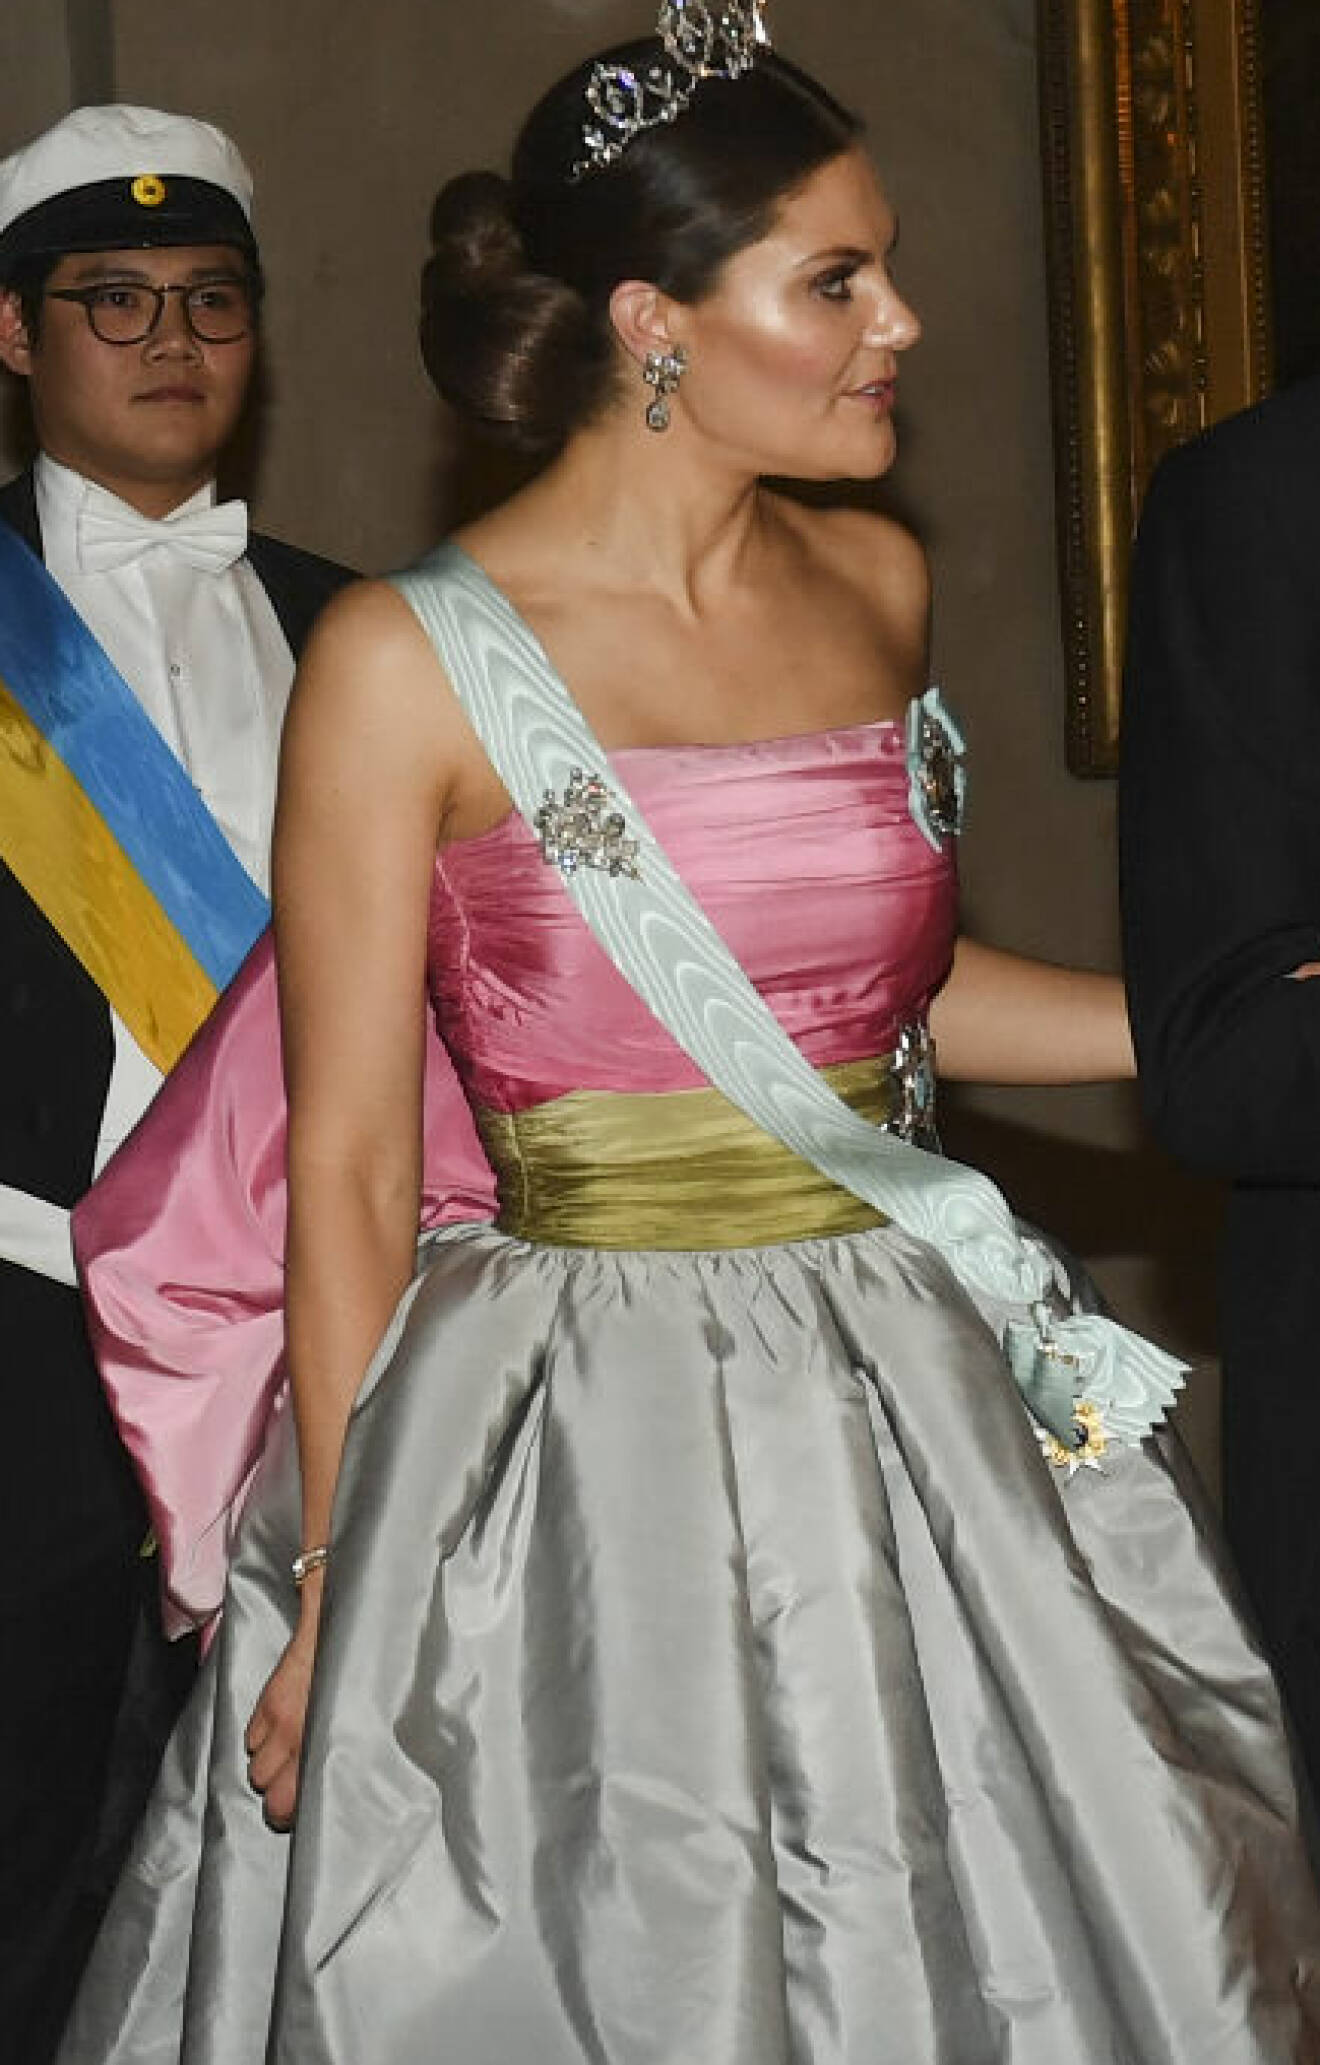 Kronprinsessan Victoria på Nobelfesten 2018 i drottning Silvias Nina Ricci-klänning